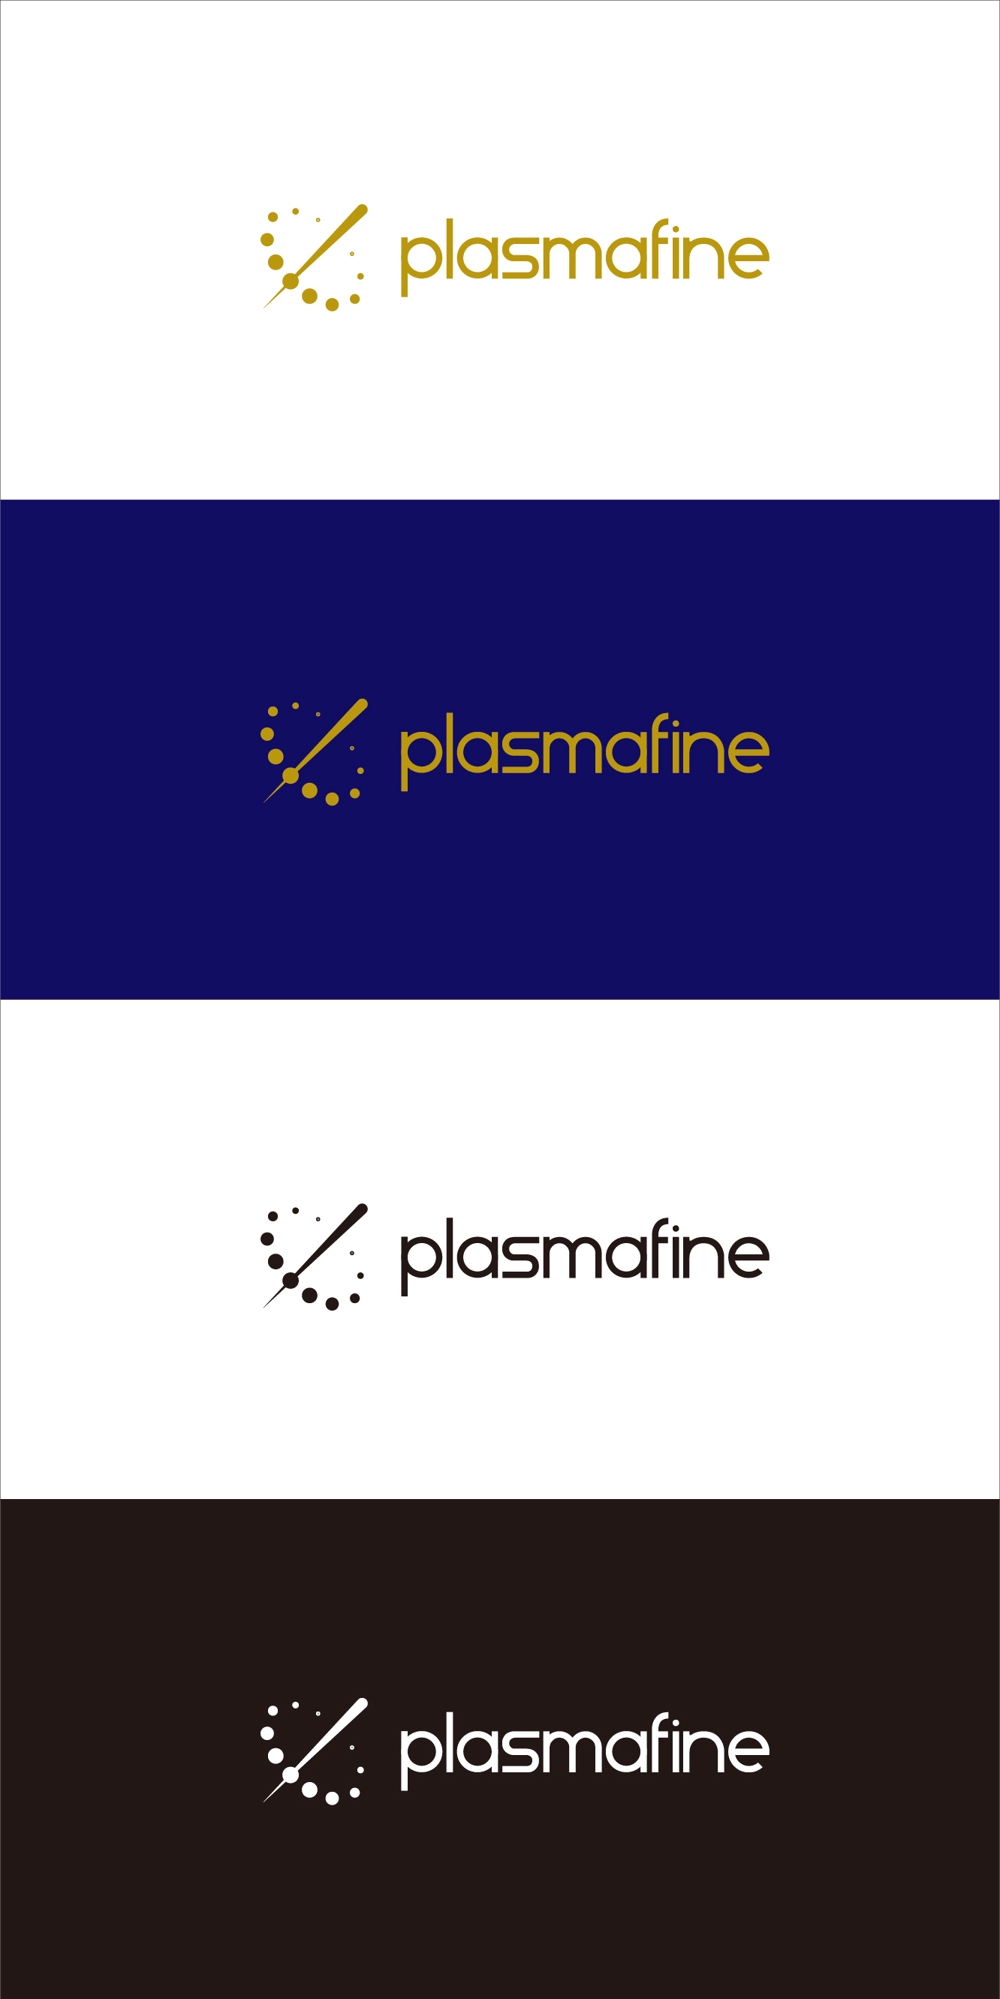 plasmafine6.jpg